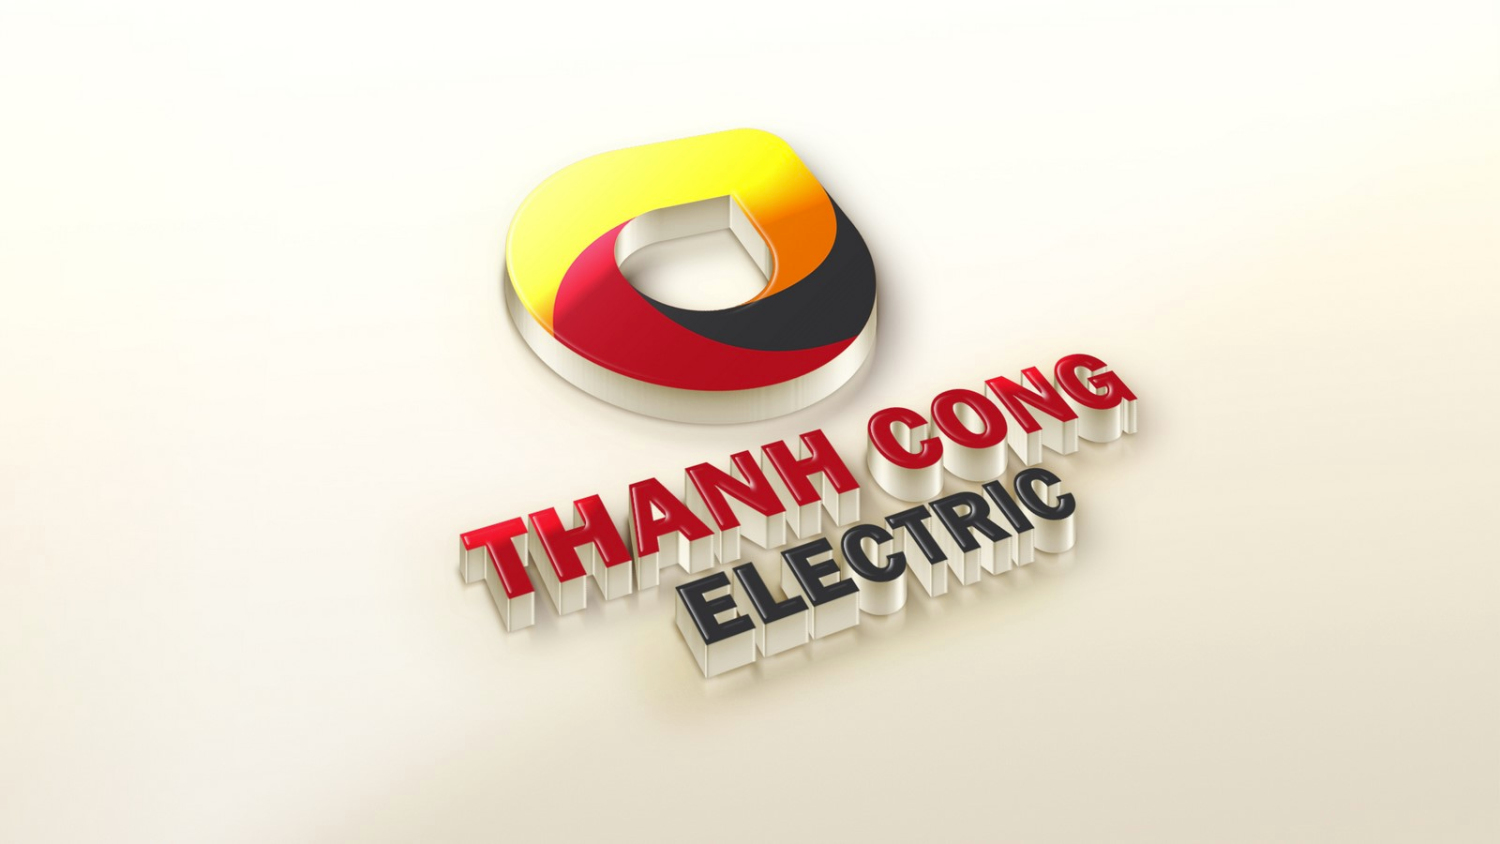 Thiet ke logo Thang Long 11 (Copy)